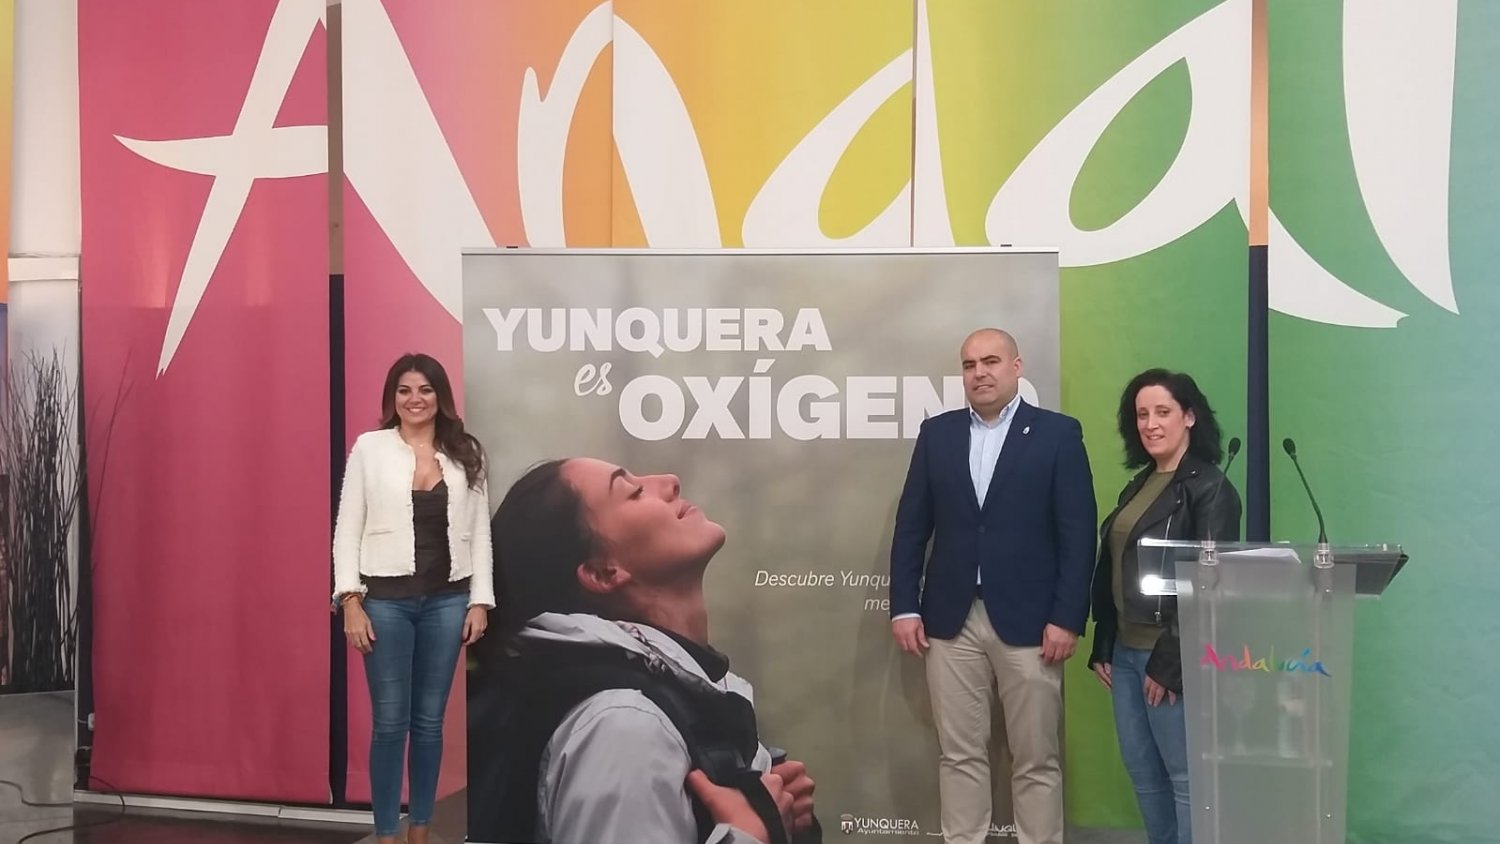 Nuria Rodríguez: “Yunquera es Oxígeno significa un antes y un después para el pueblo”